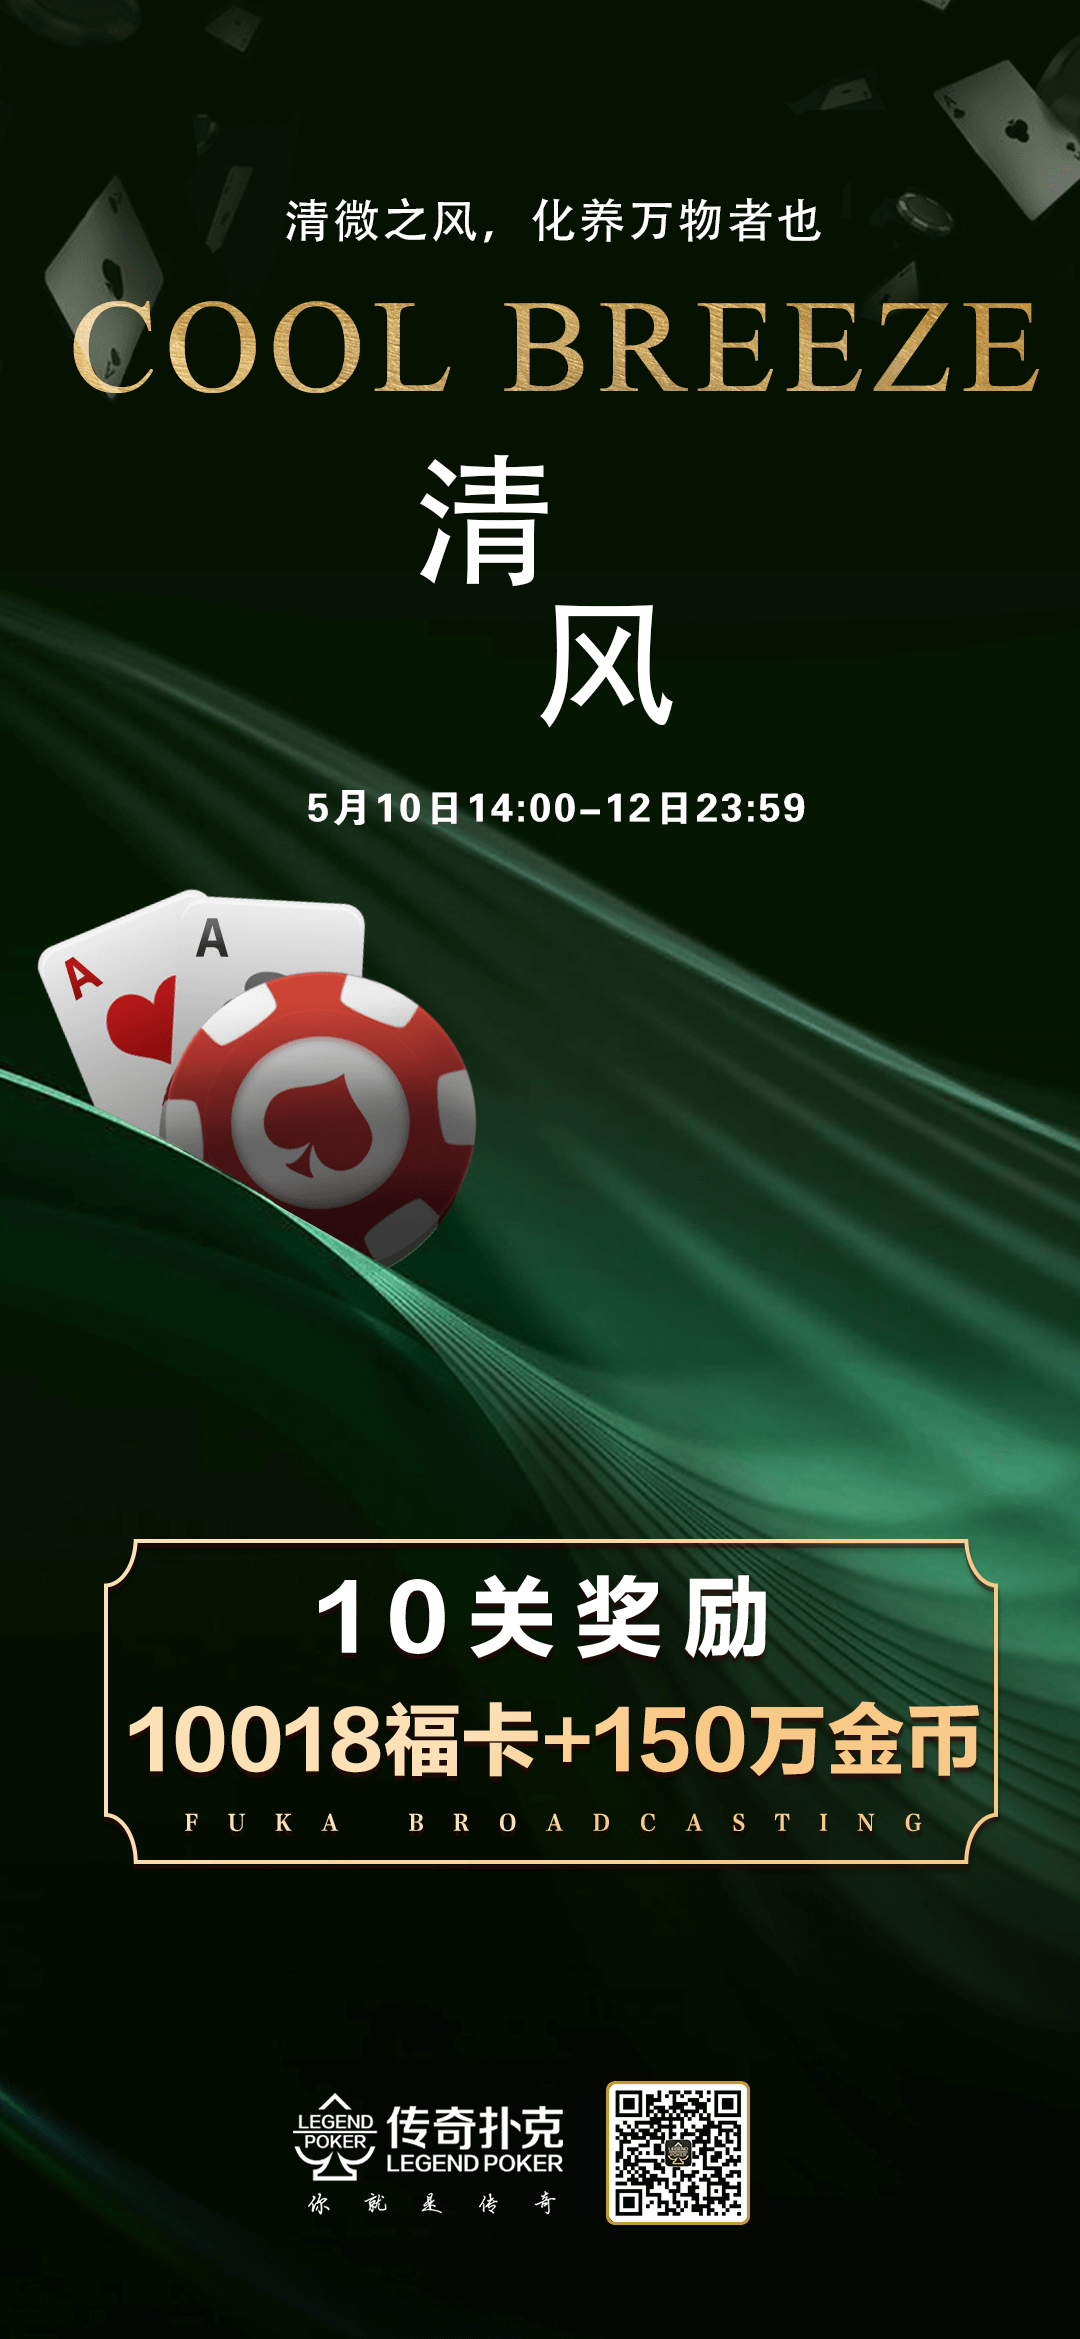 传奇扑克APP清风福利活动3天10018福卡